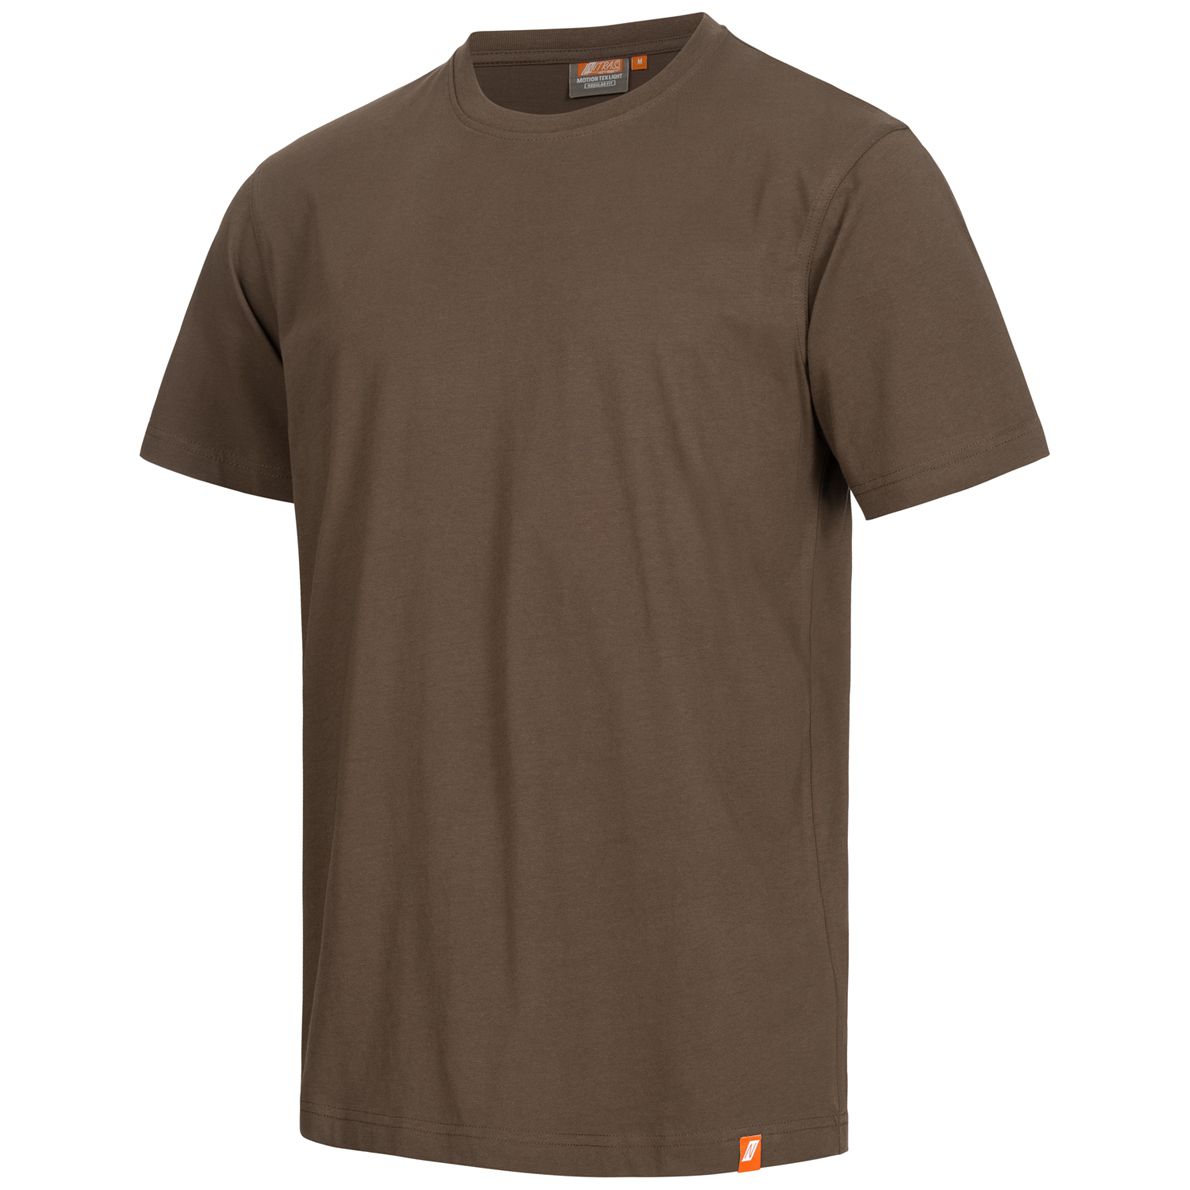 NITRAS MOTION TEX LIGHT Arbeits-T-Shirt - Kurzarm-Hemd aus 100% Baumwolle - für die Arbeit - Braun - S